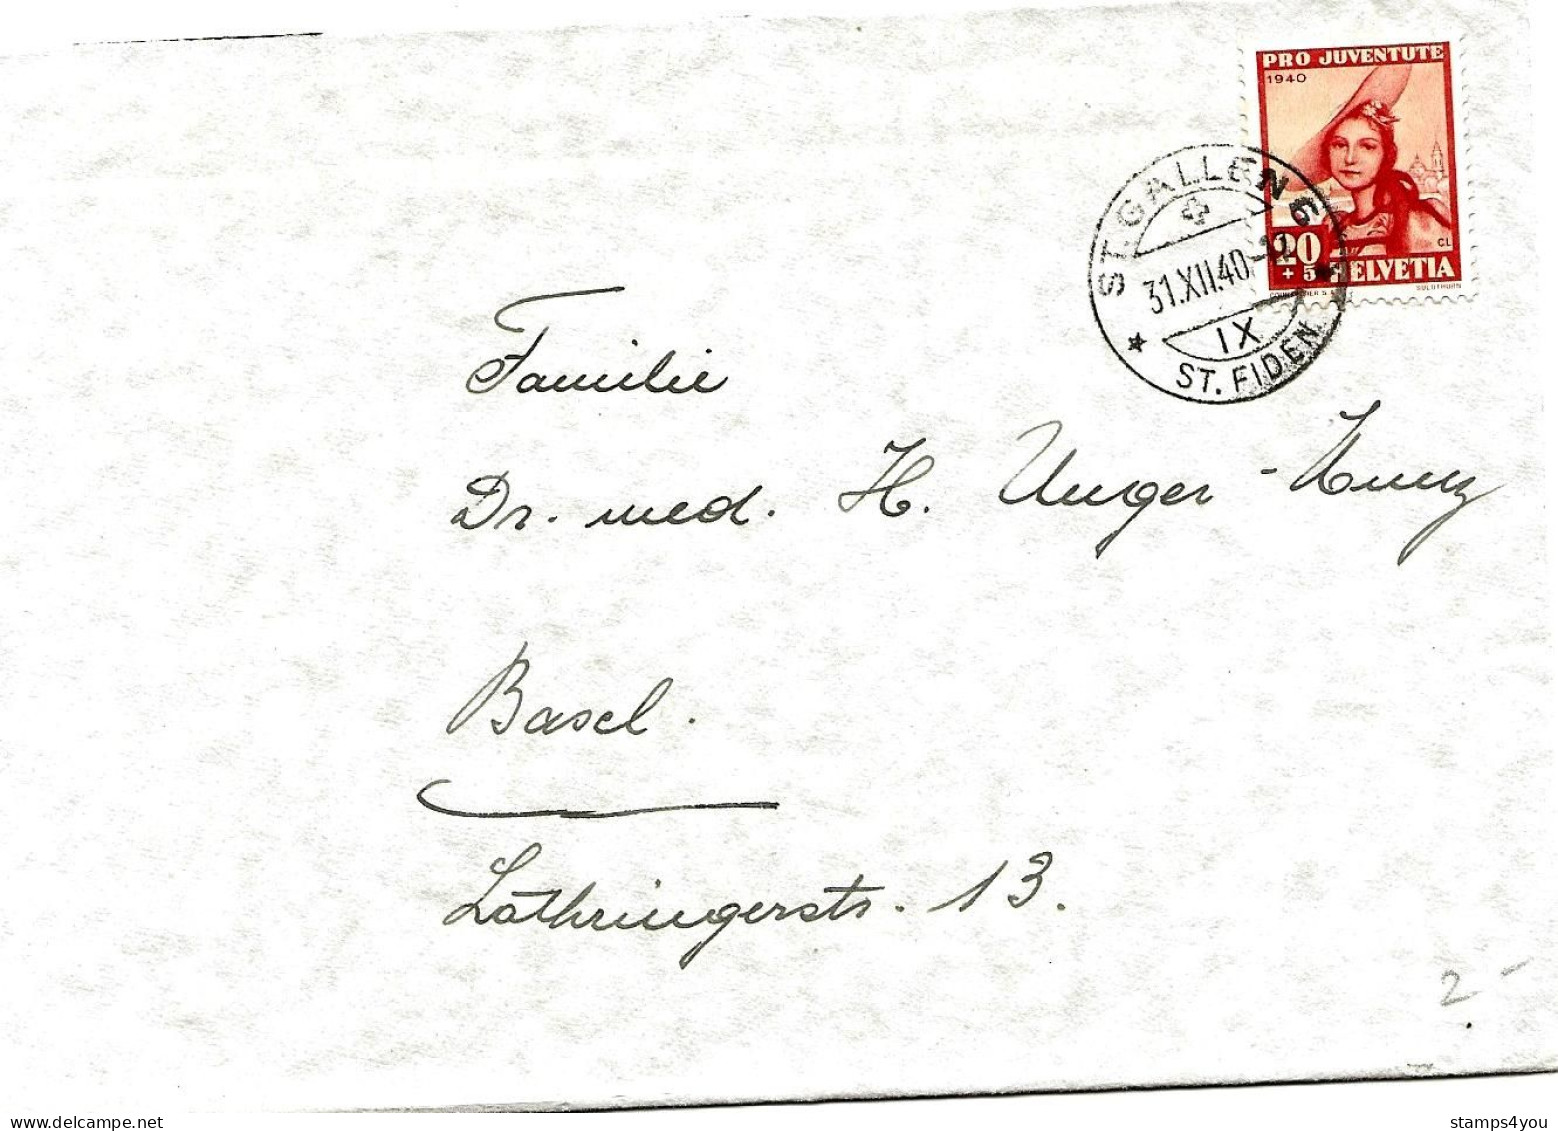 79 - 89 - Enveloppe Avec Timbre Pro Juventute 1940 - Cachet à Date St Gallen 31.12.40. - Brieven En Documenten